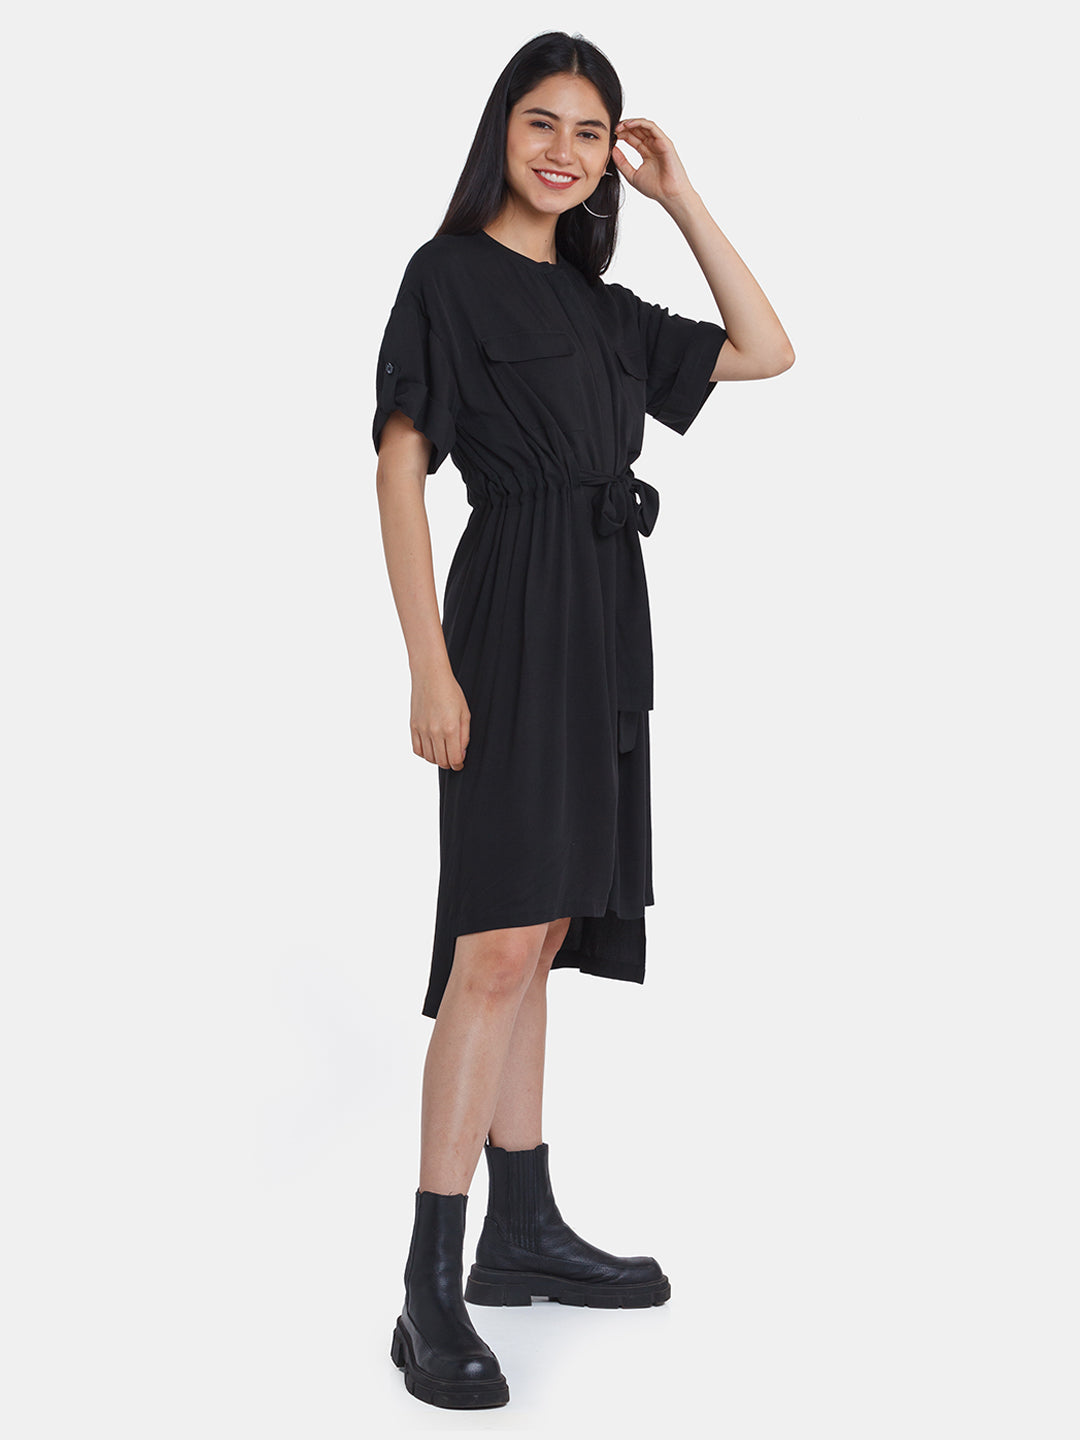 3 Ways to Wear a Black Midi Dress - Cyndi Spivey